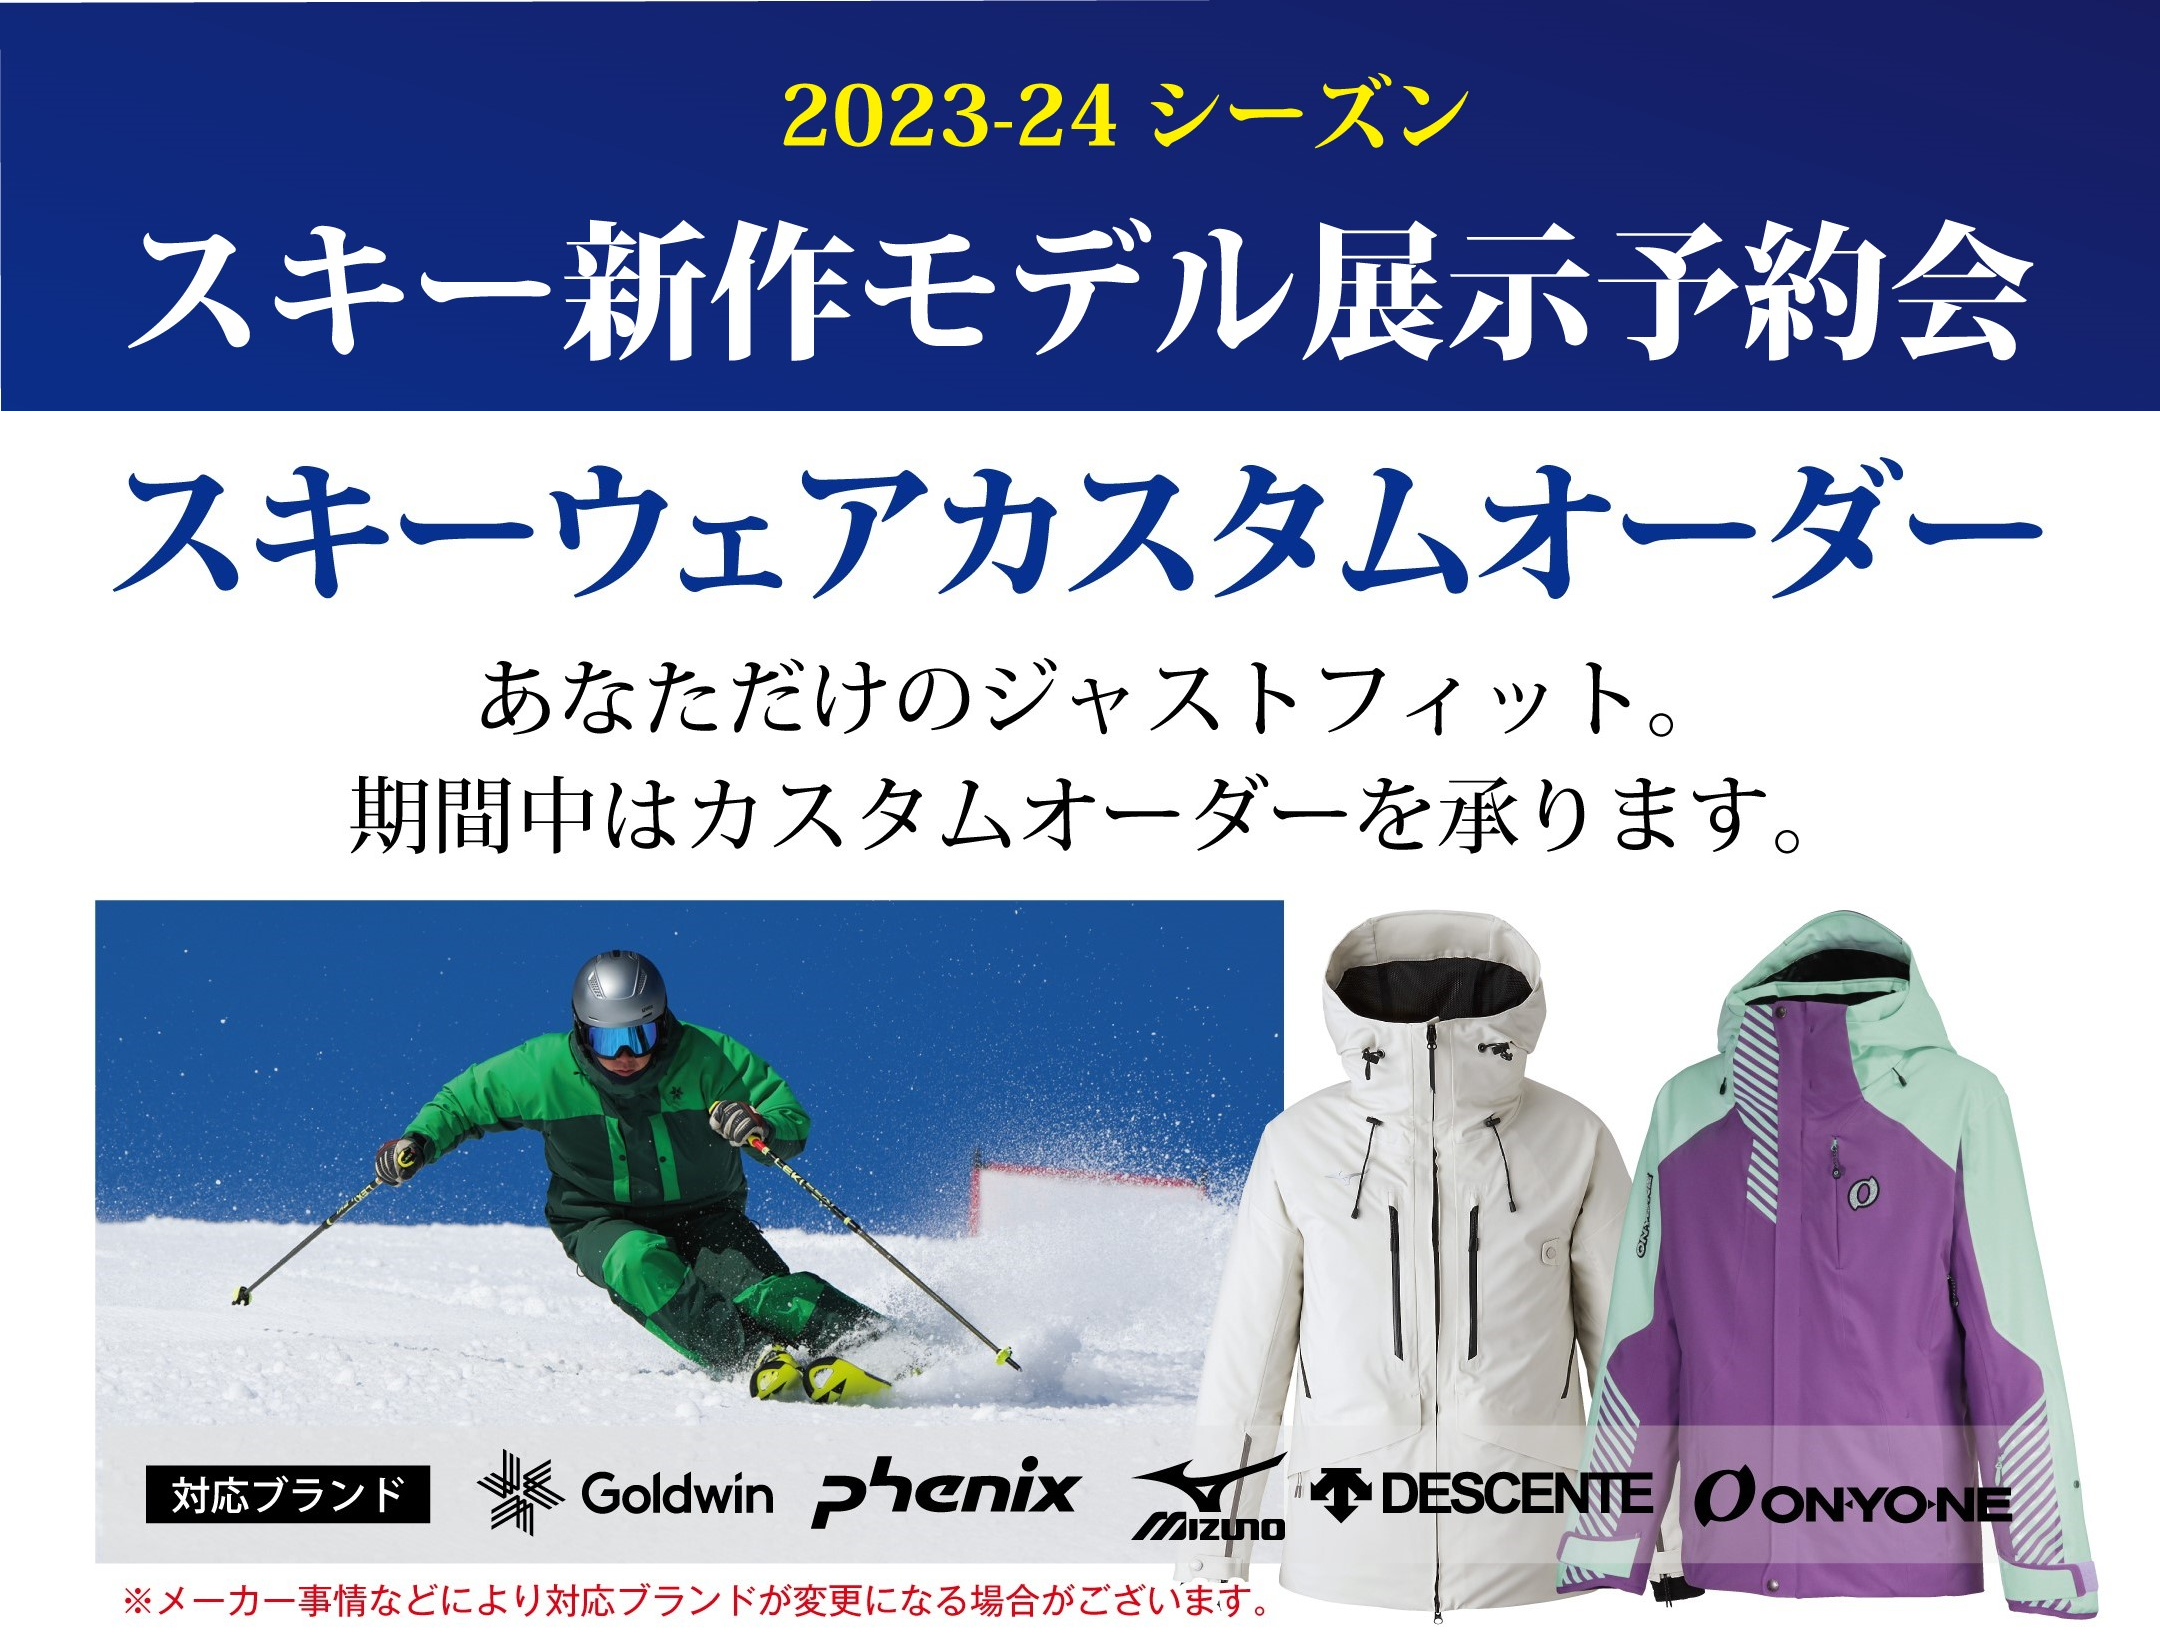 2023-24シーズン スキー新作モデル展示予約会のお知らせ｜6月1日更新